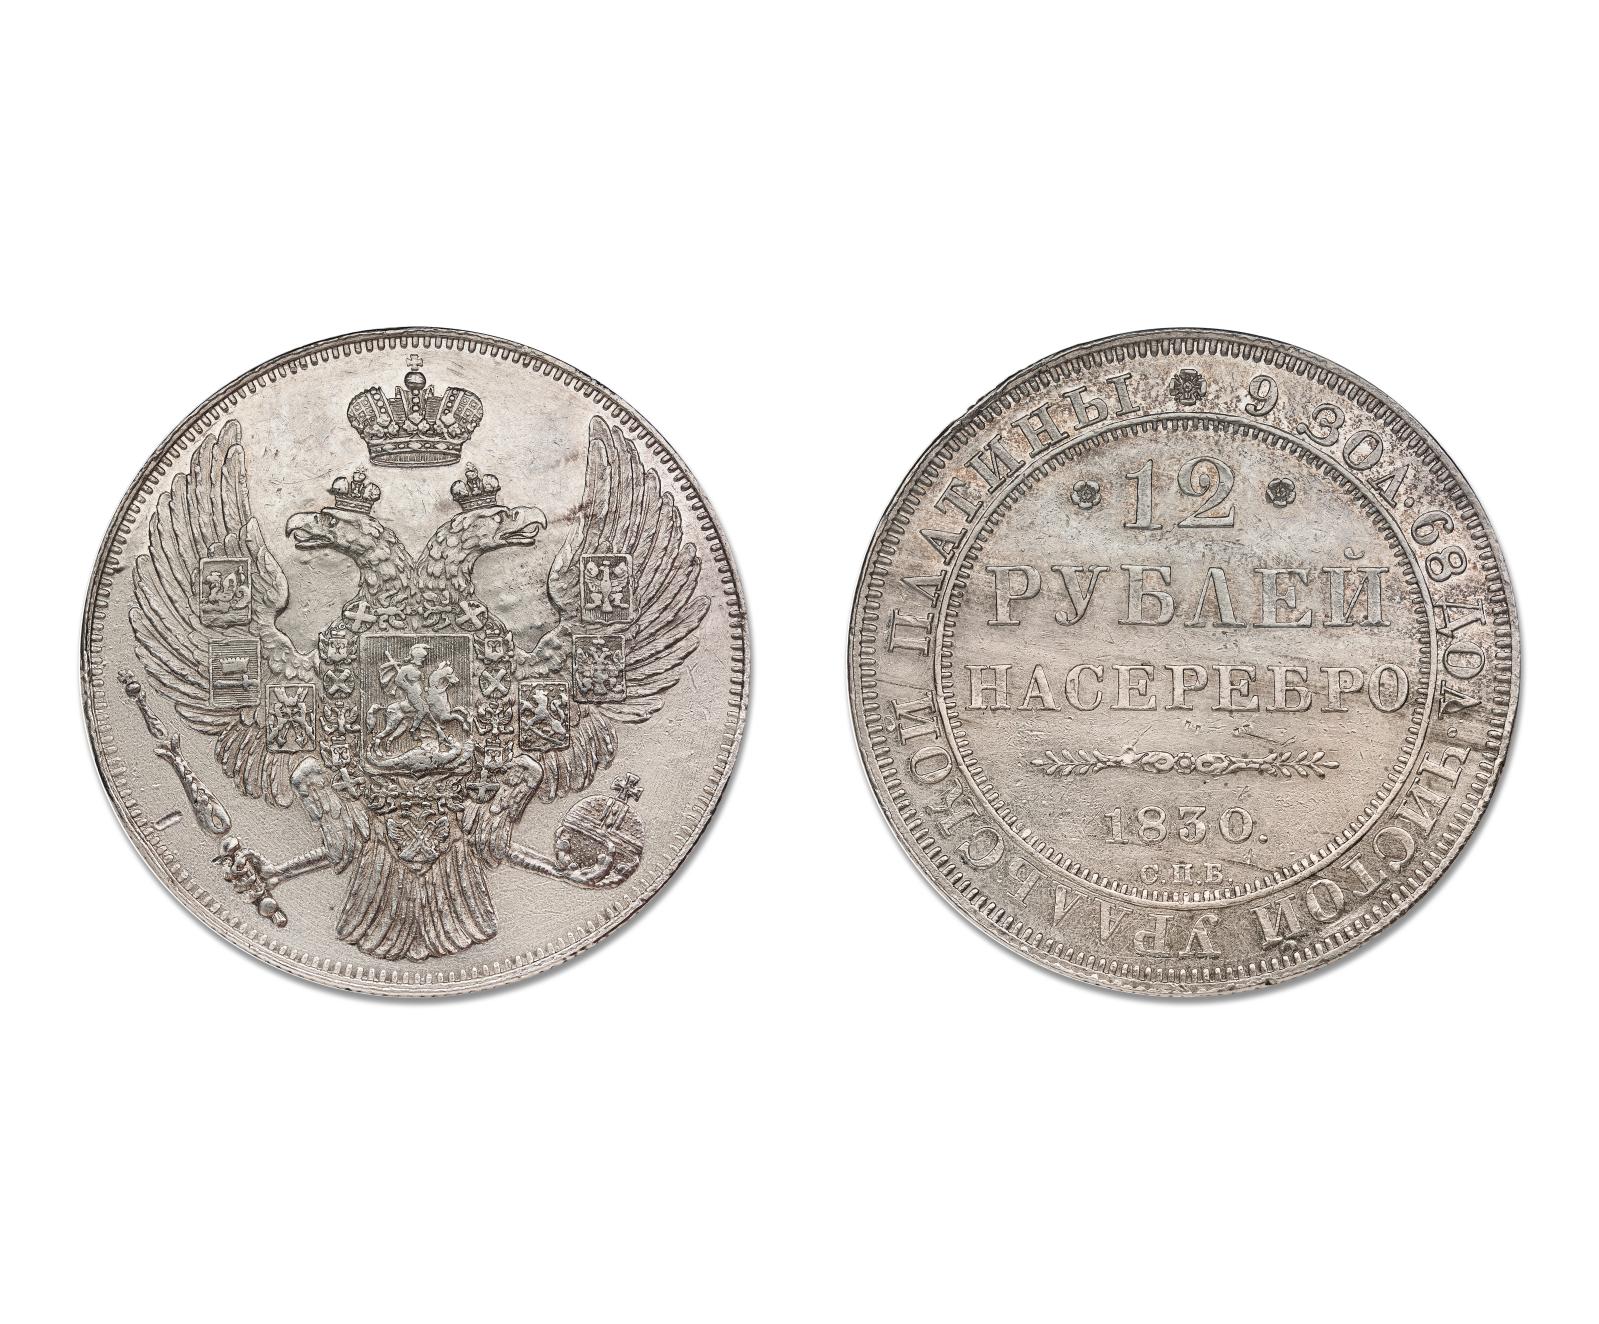 Lors de la vente du mardi 9 avril, dans la partie numismatique (Mme Bourgey, expert), la Russie mettait son argent sur la table des enchères. Cette pi